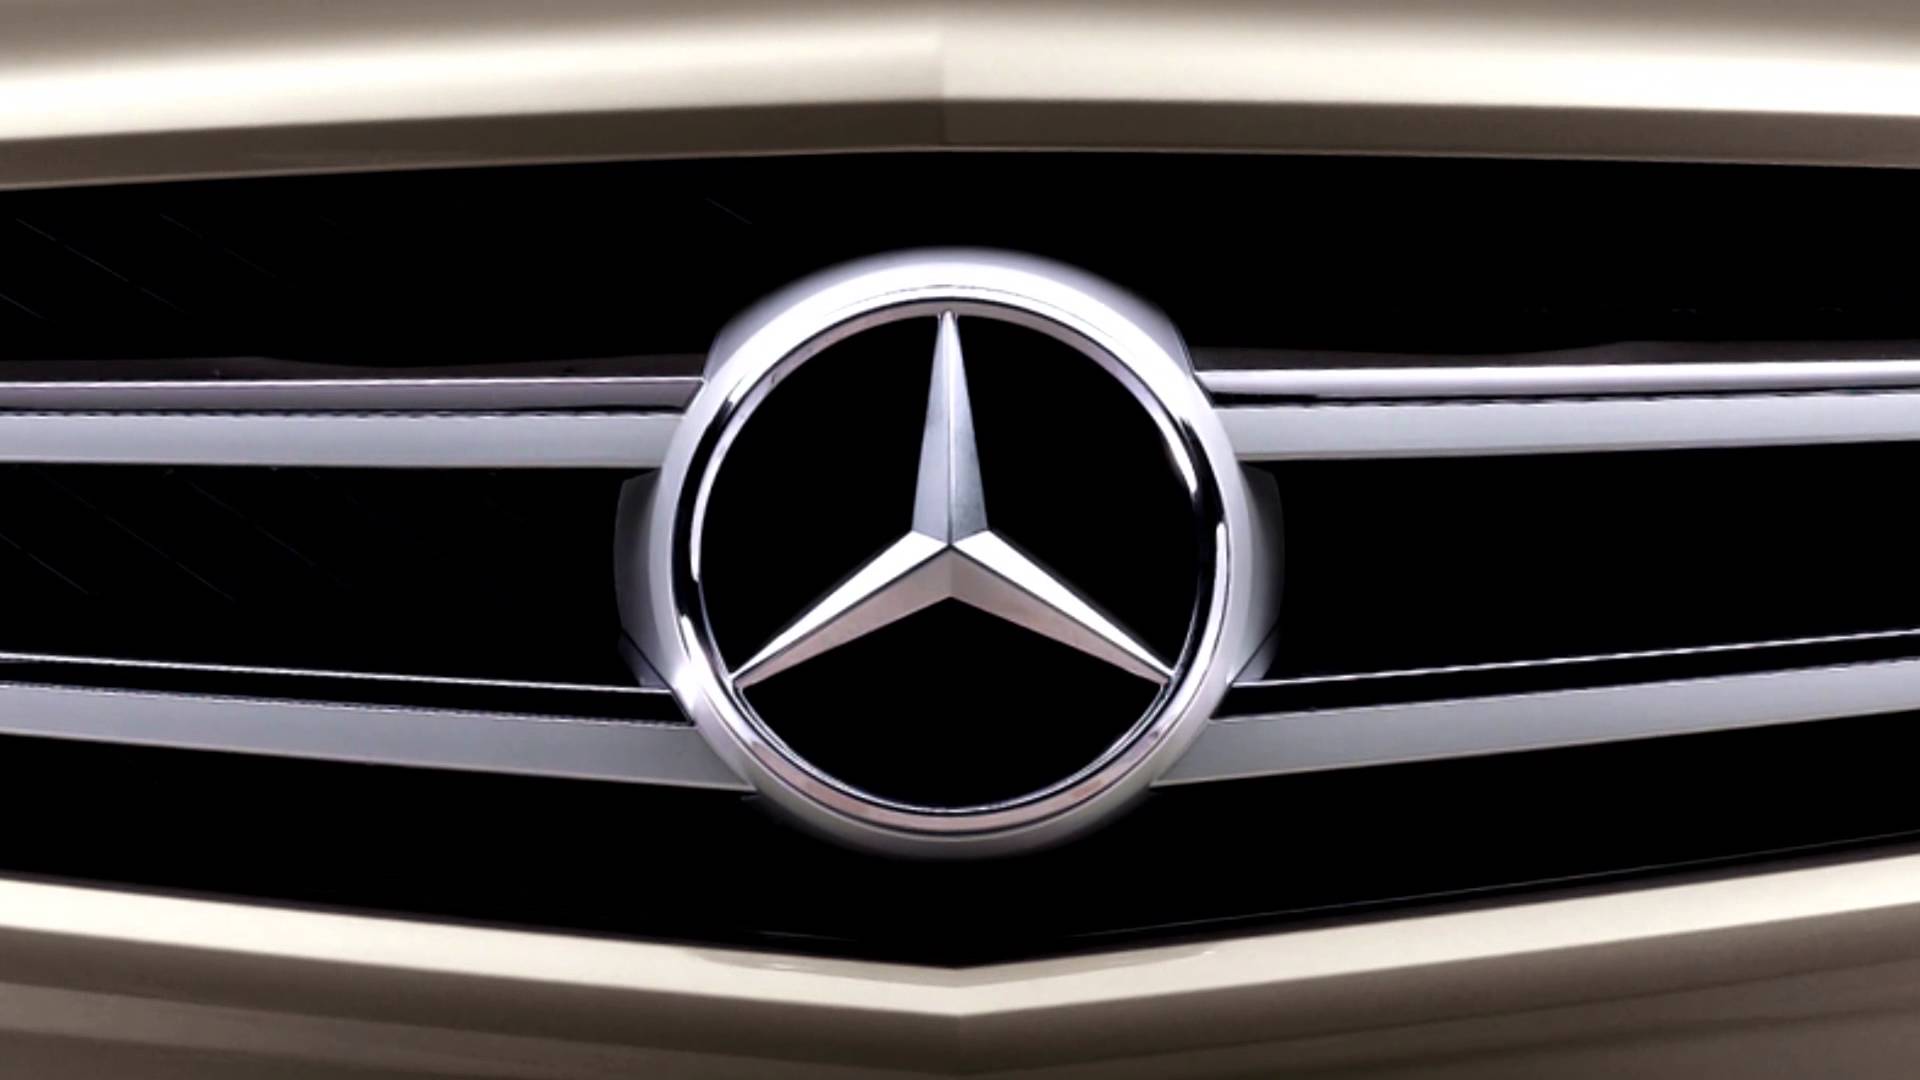 Mercedes Benz Wallpapers Download